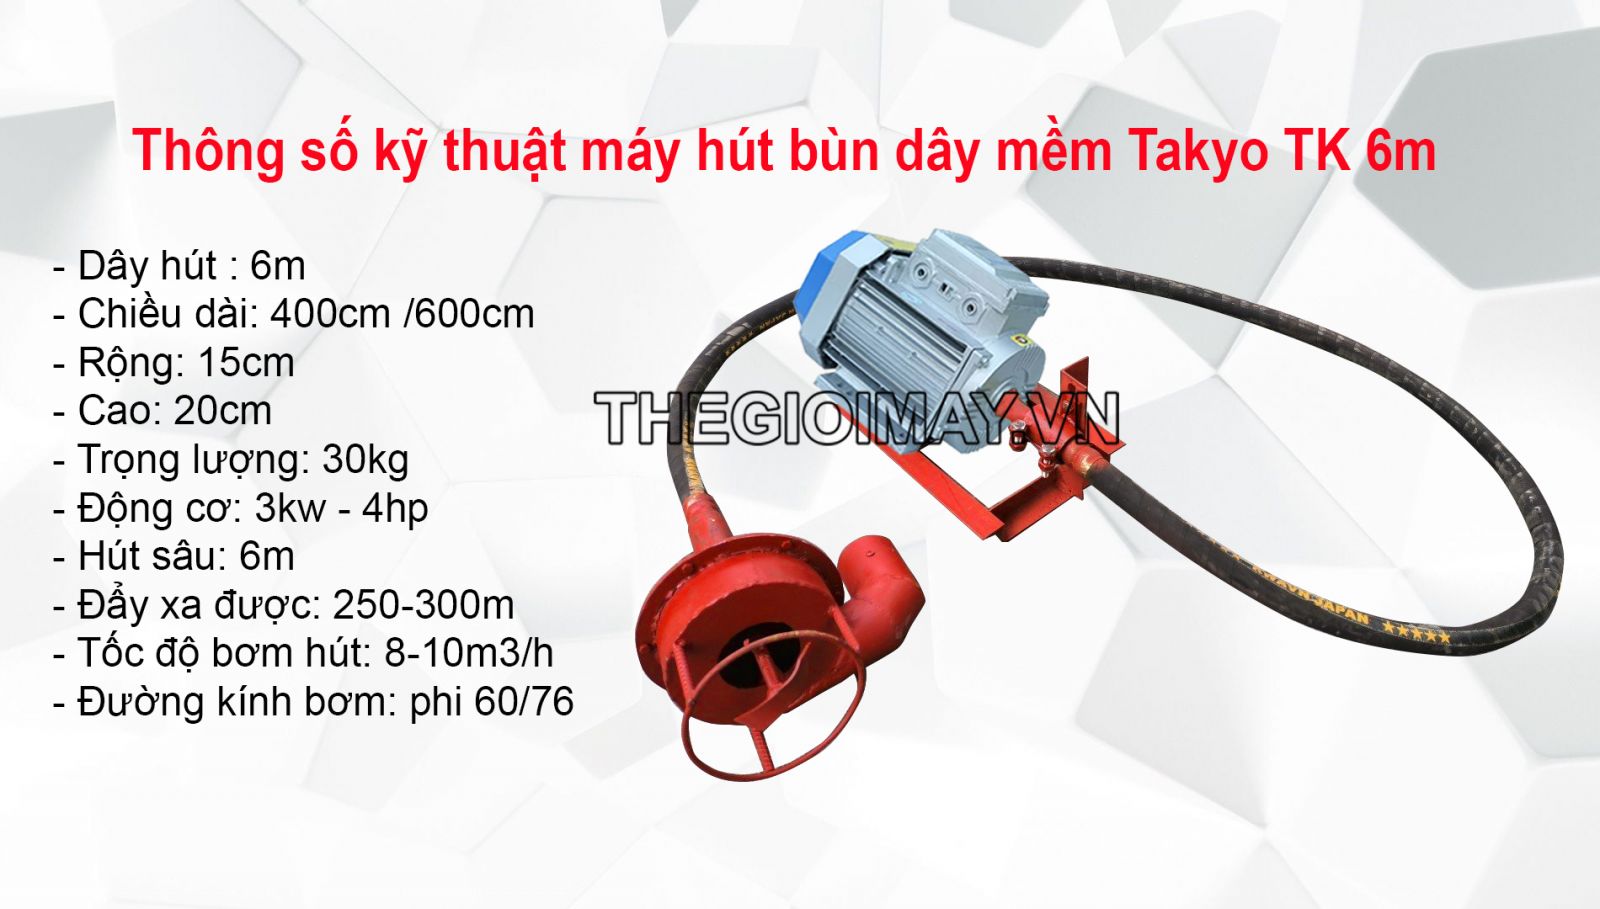 Thông số kỹ thuật máy hút bùn dây mềm TAKYO TK 6m